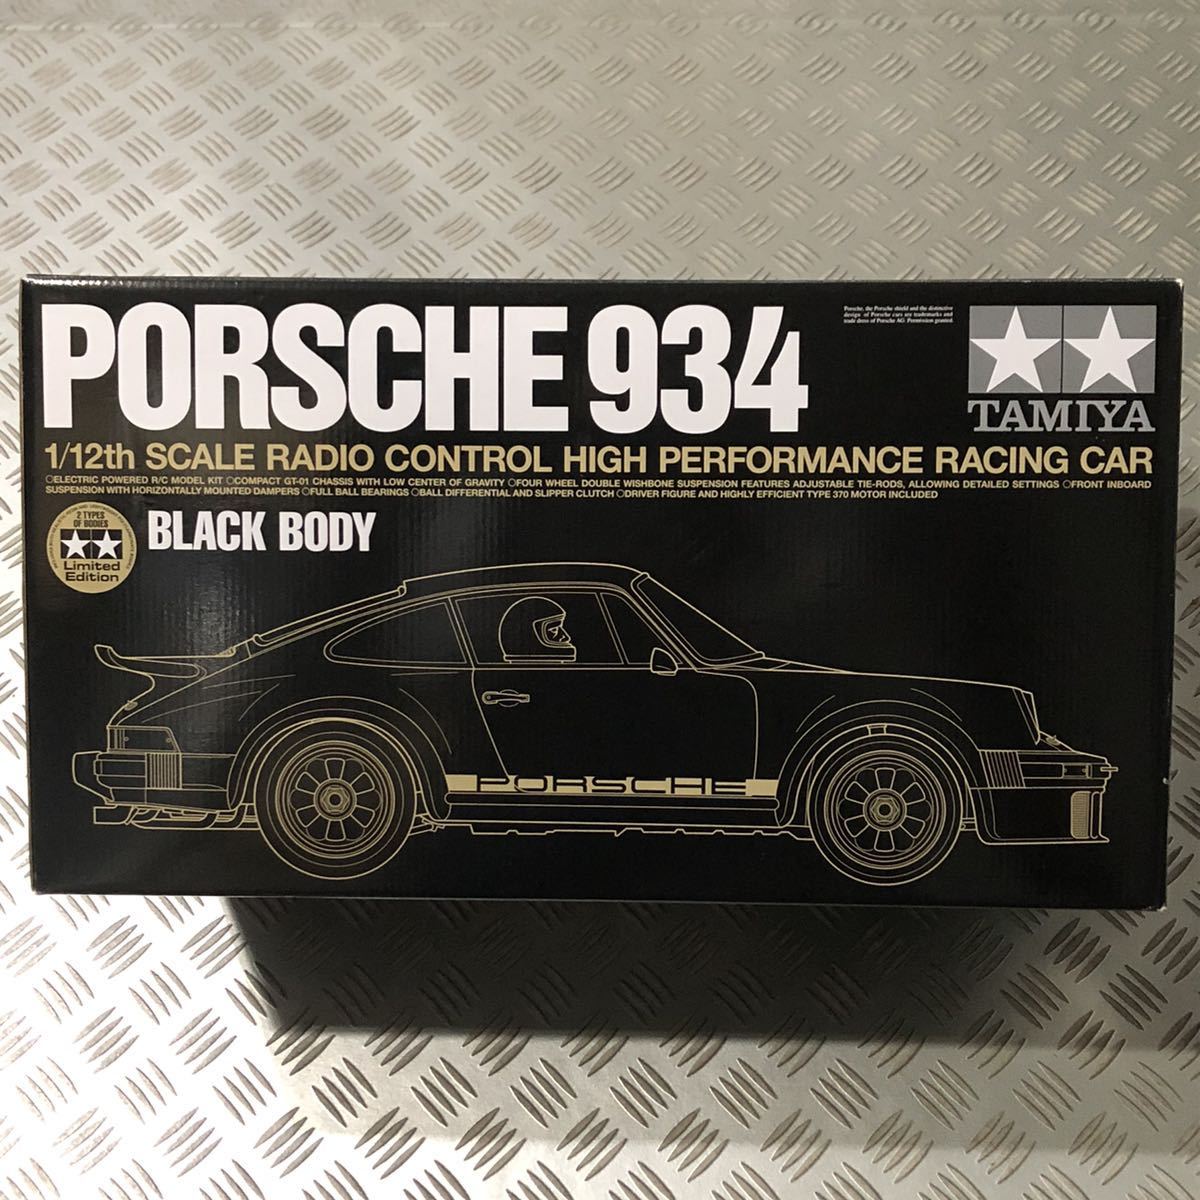 タミヤ ブラック ポルシェ 934 TAMIYA BLACK PORSCHE 934 1/12 未組立 限定スペシャルキット タムテックギア  TamTechGear GT-01 プラボディ